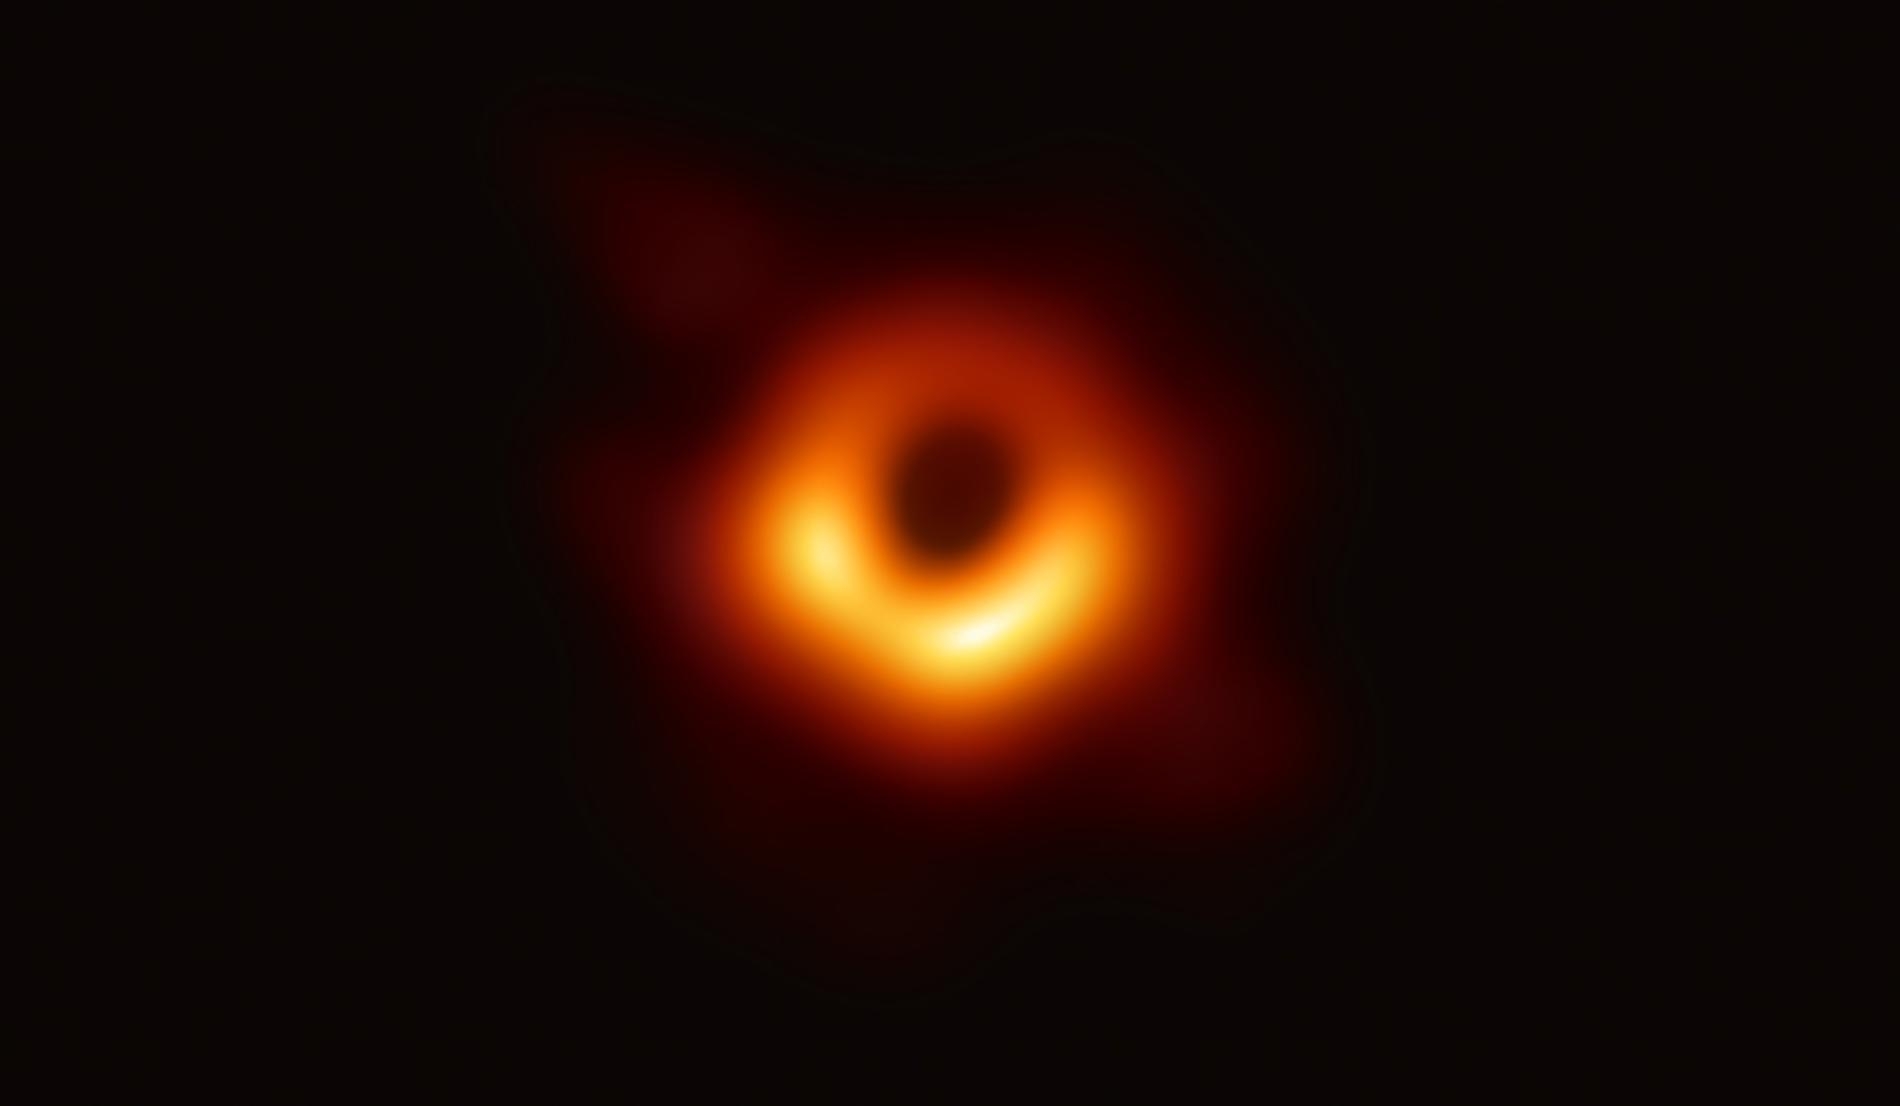 事件視界望遠鏡（Event Horizon Telescope）是個跟地球一樣大的地面無線電波望遠鏡陣列，天文學家利用它成功拍攝到超大質量黑洞及其暗影的第一張圖像。這張圖像揭露的是室女座星系團中大質量星系M87中心的黑洞。 PHOTOGRAPH BY EVENT HORIZON TELESCOPE COLLABORATION